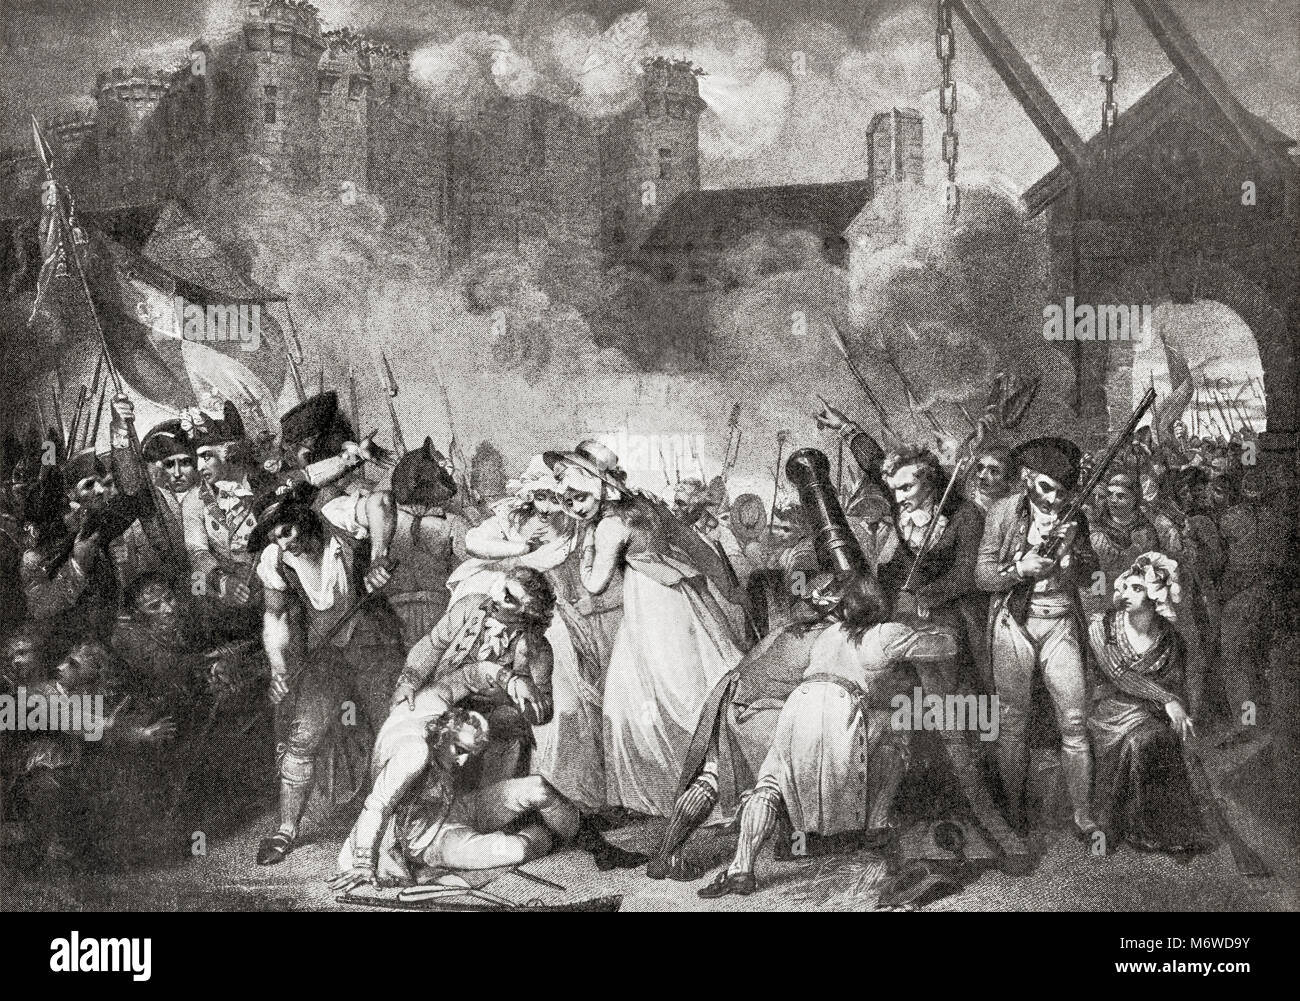 La prise de la Bastille, Paris, France, 14 juillet 1789. L'histoire de Hutchinson de l'ONU, publié en 1915. Banque D'Images